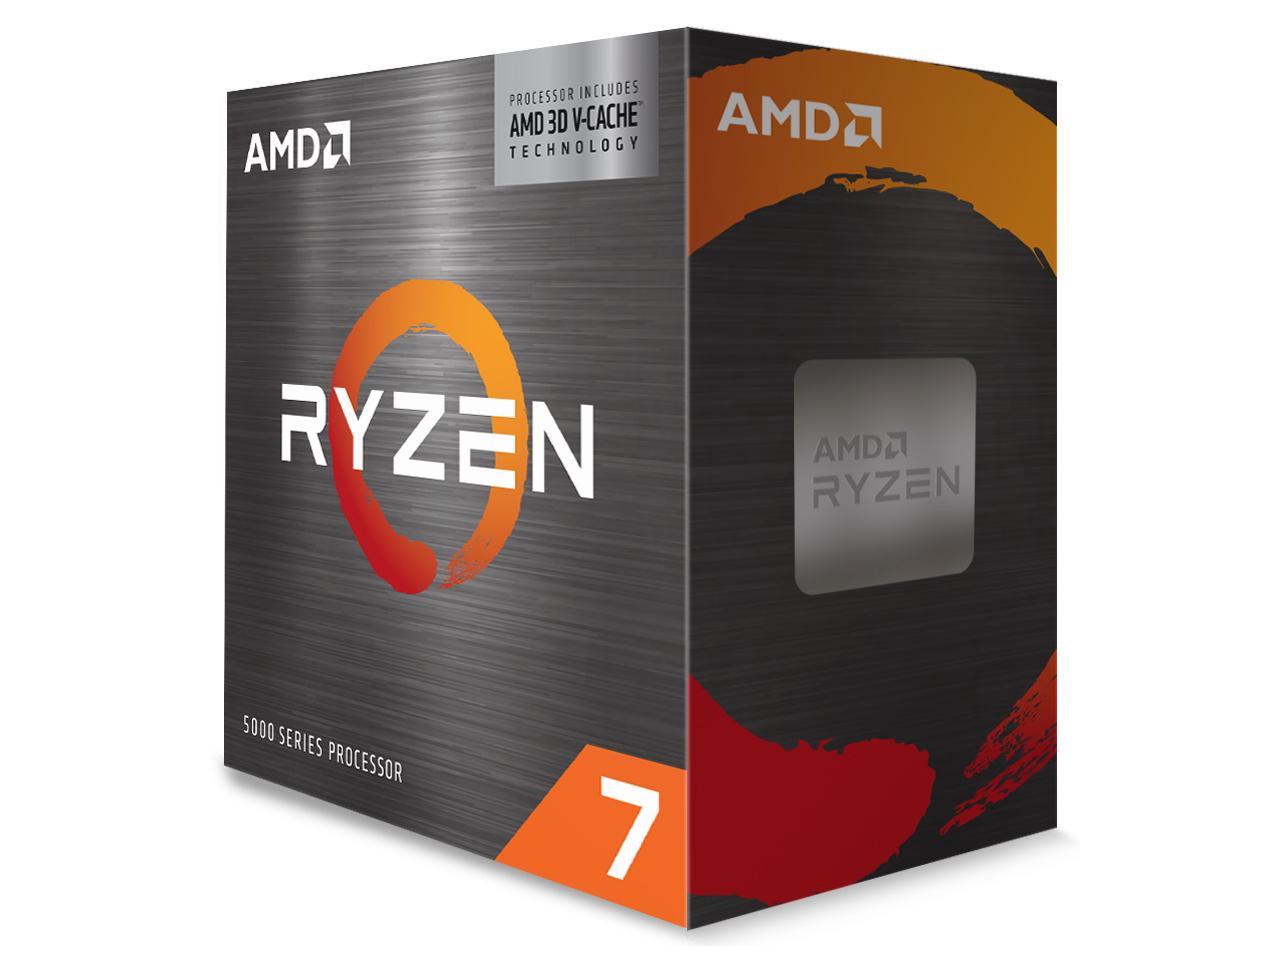 AMD Ryzen 7 5800X3D + ASRock B450M/AC AM4 Motherboard $315